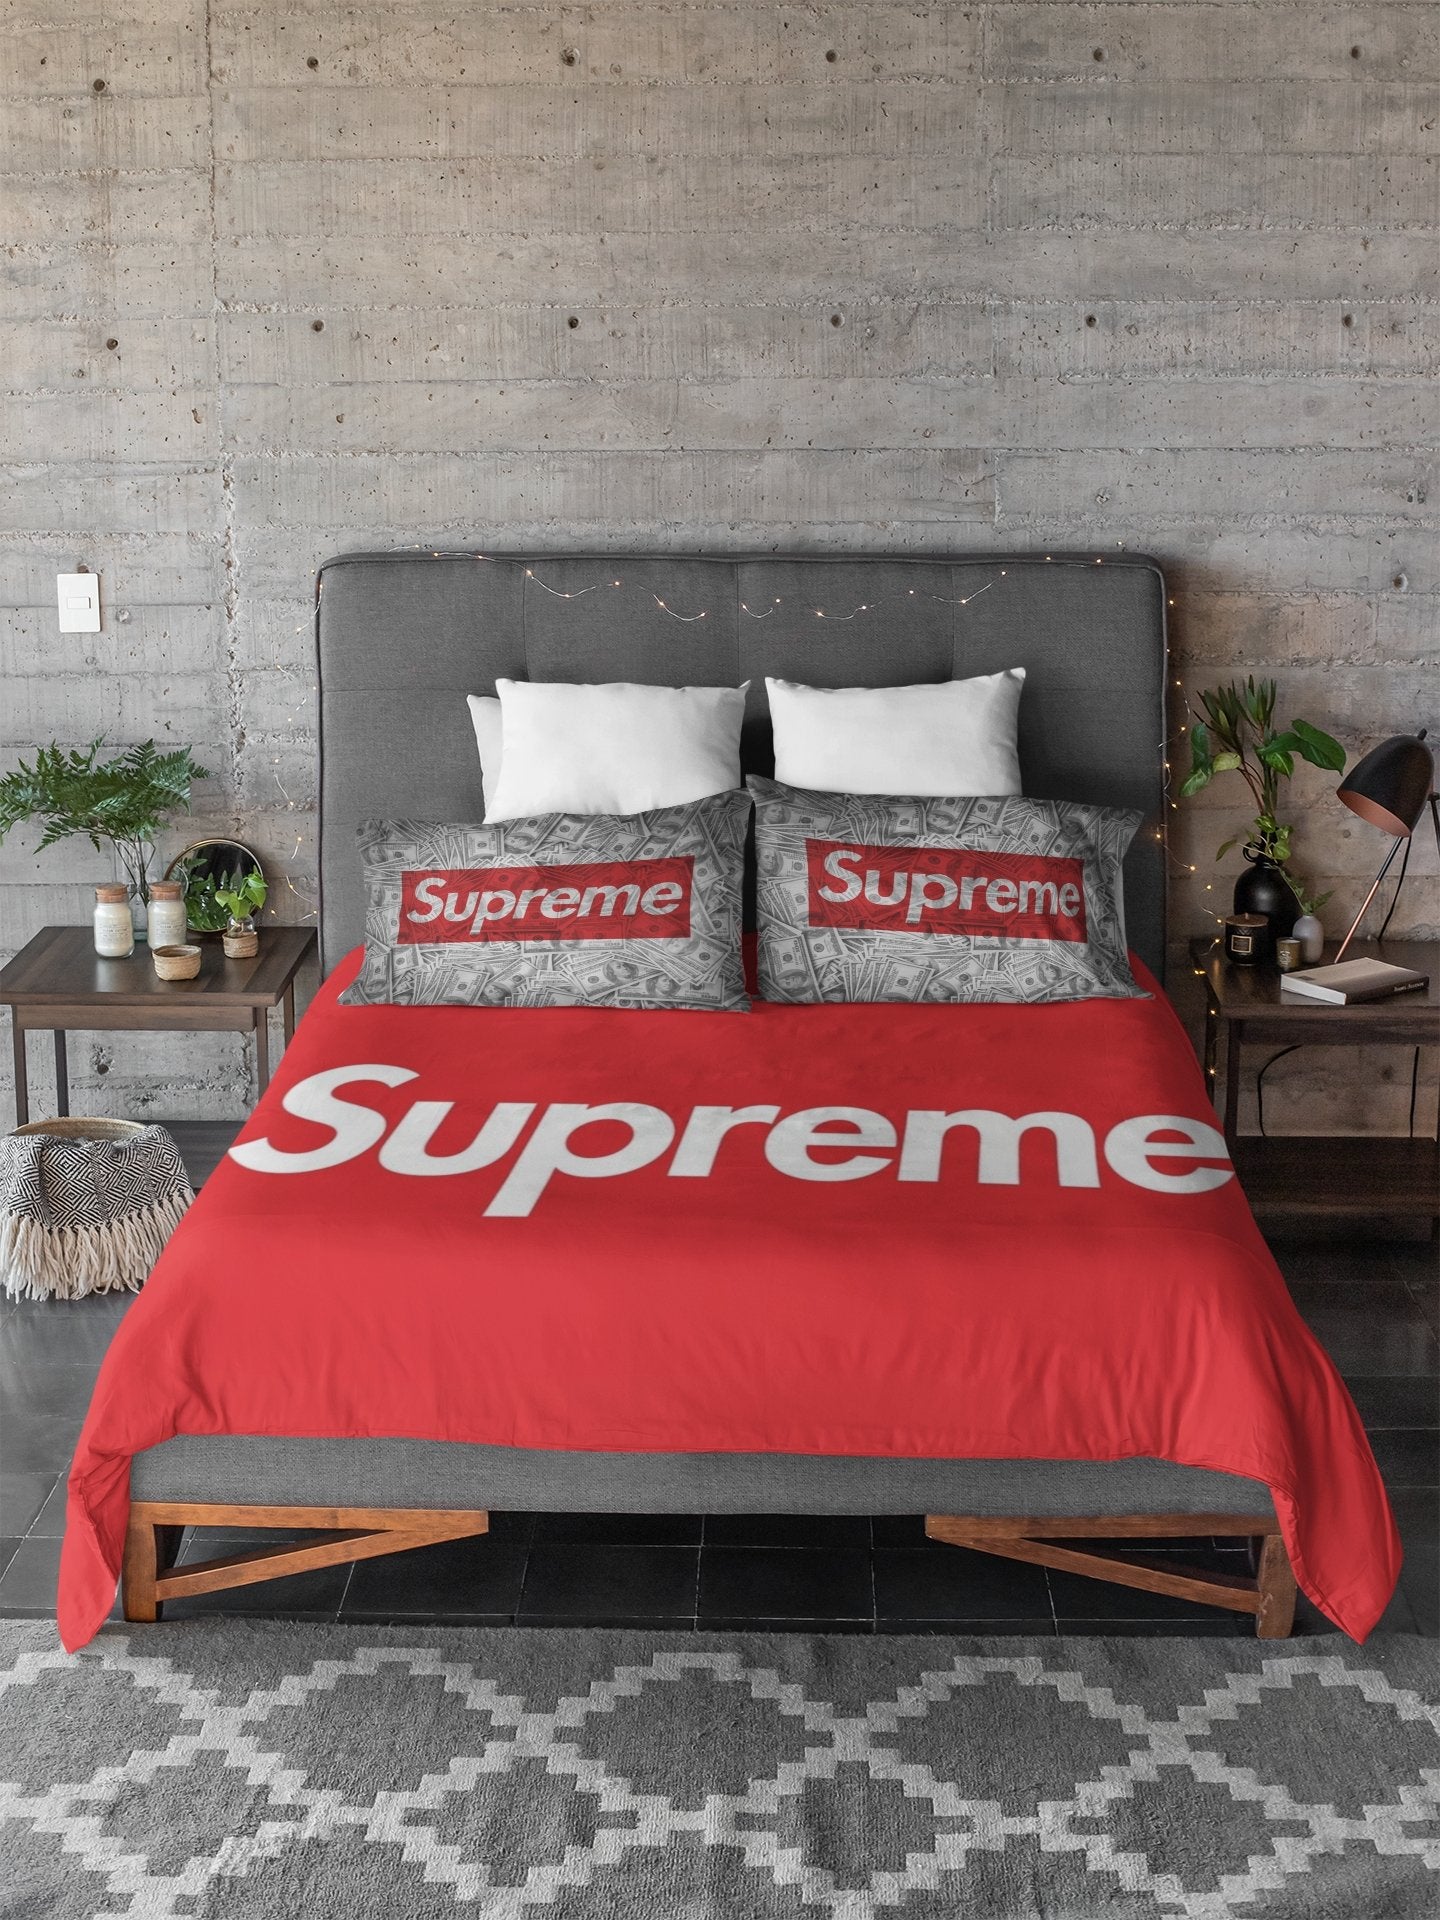 Supreme Bed Sheet Set